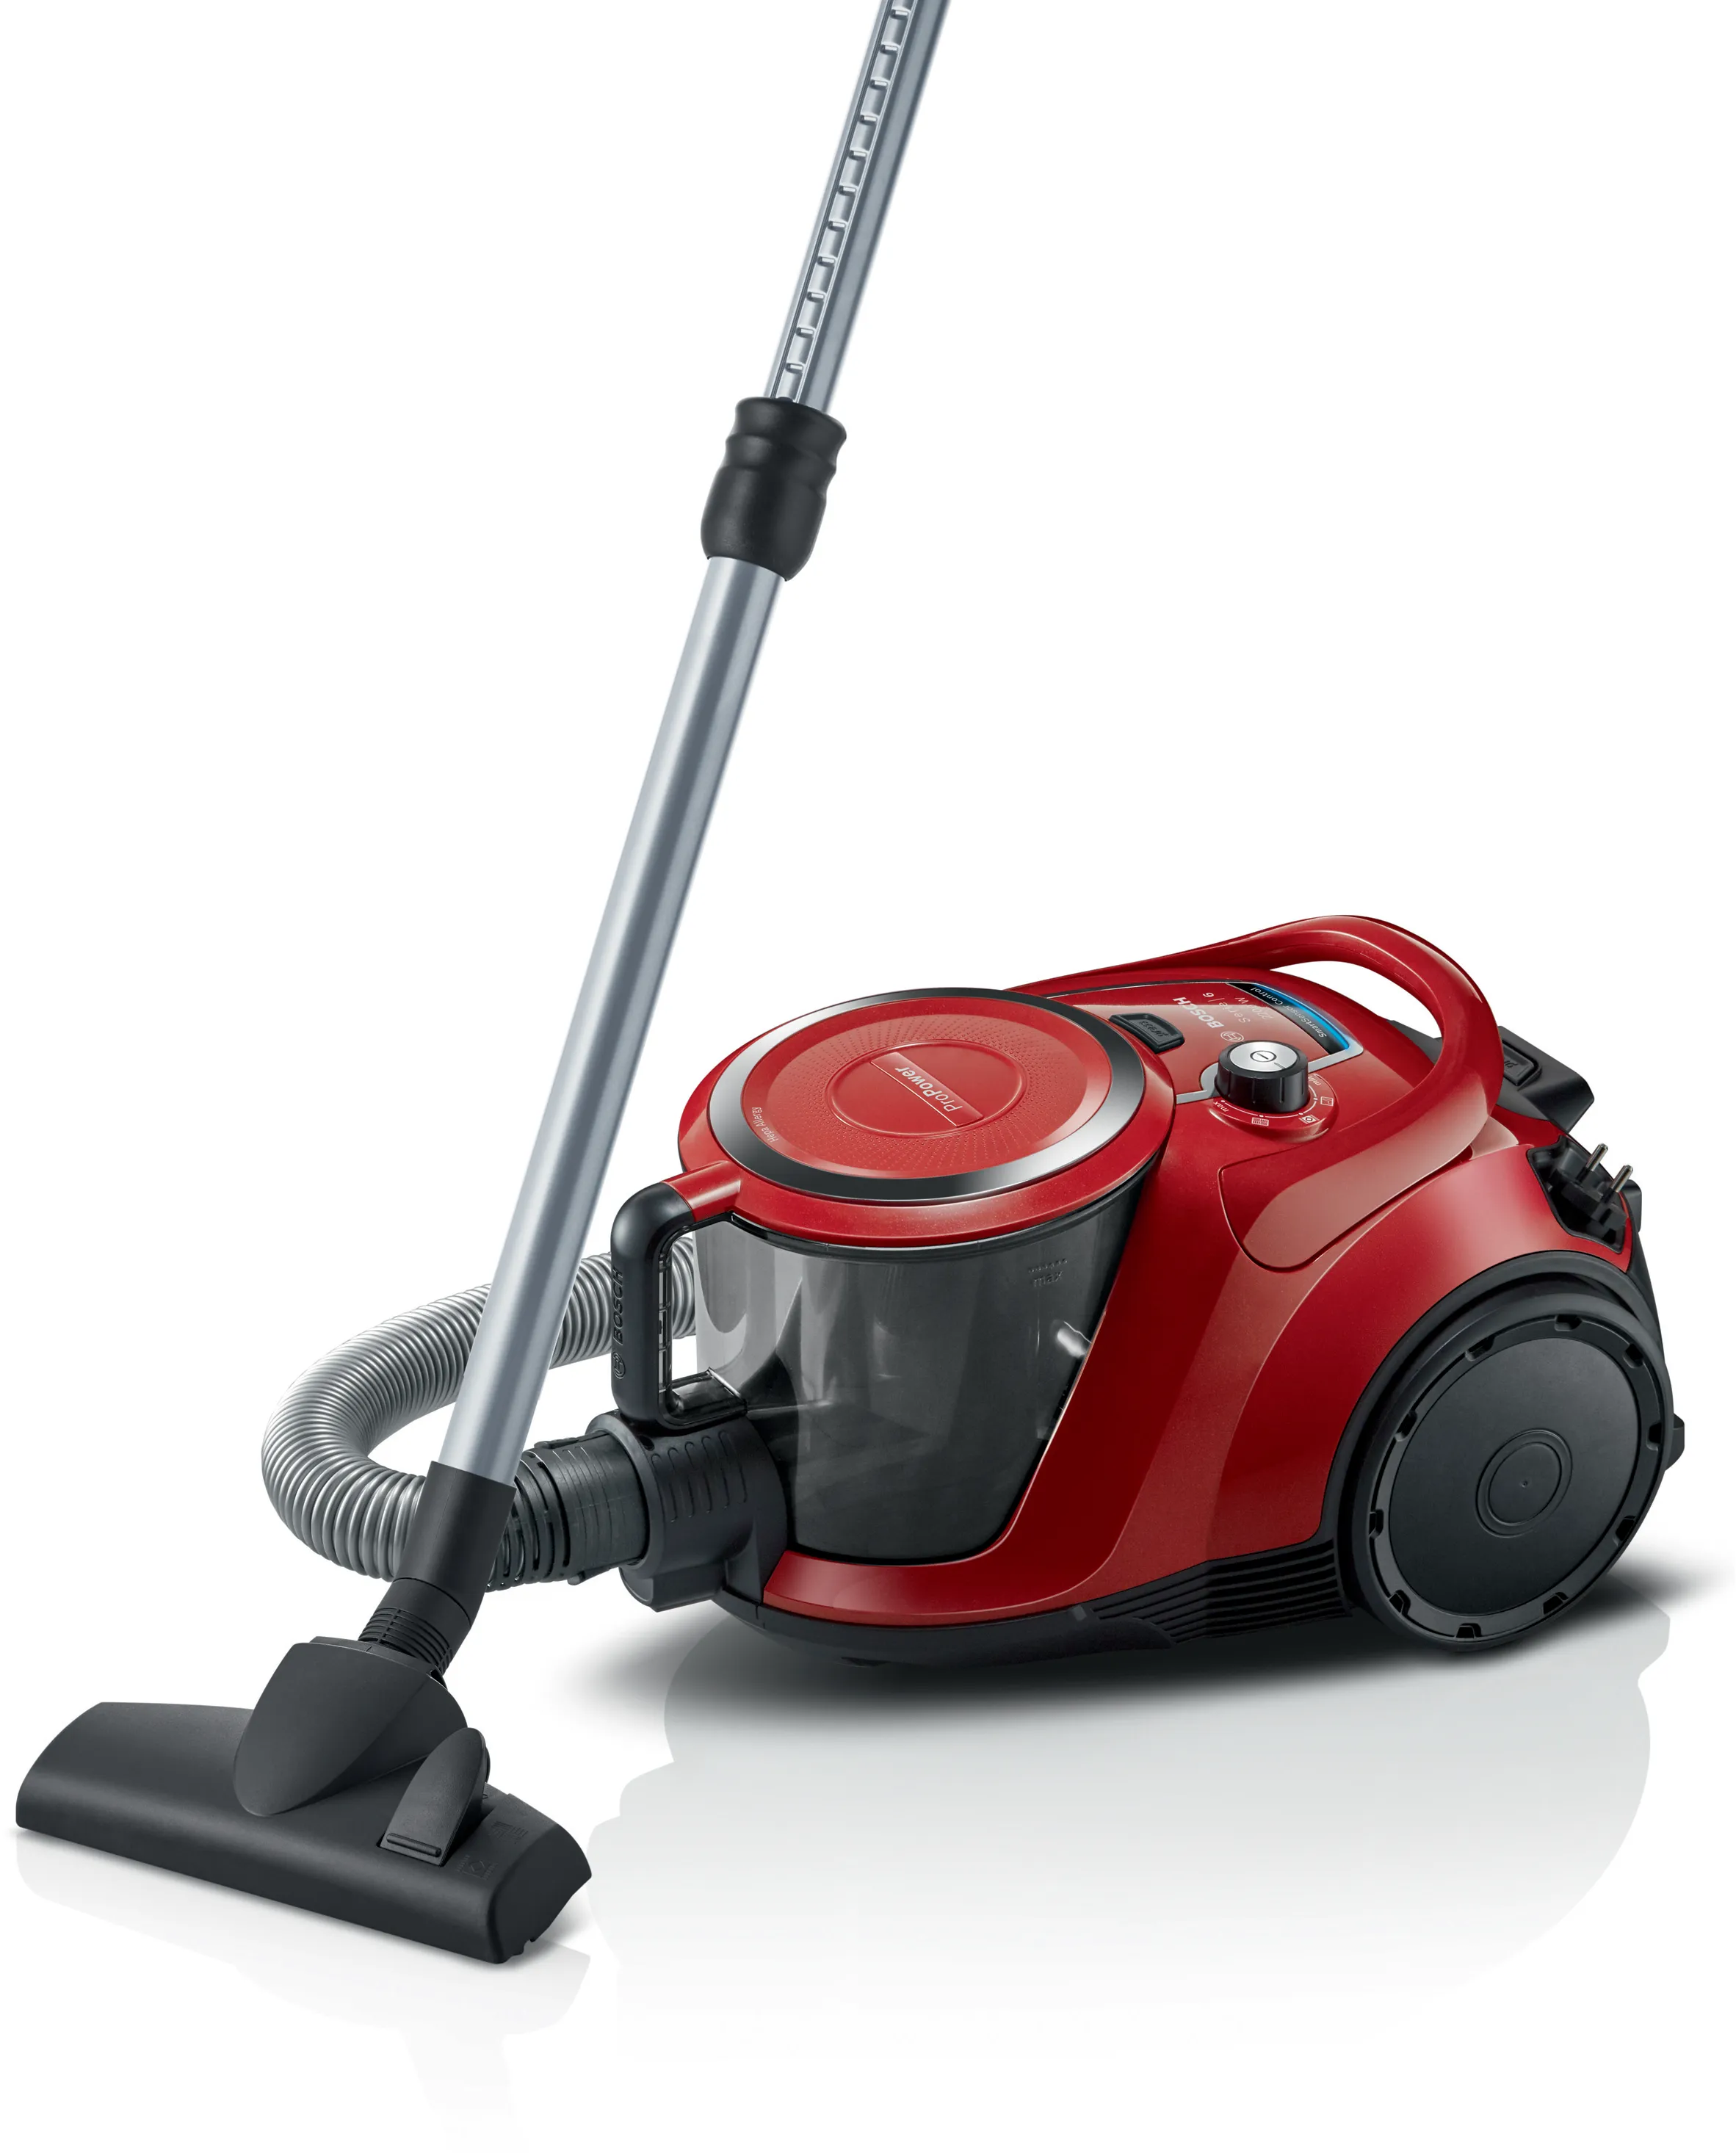 Series 6 Bagless vacuum cleaner Red 